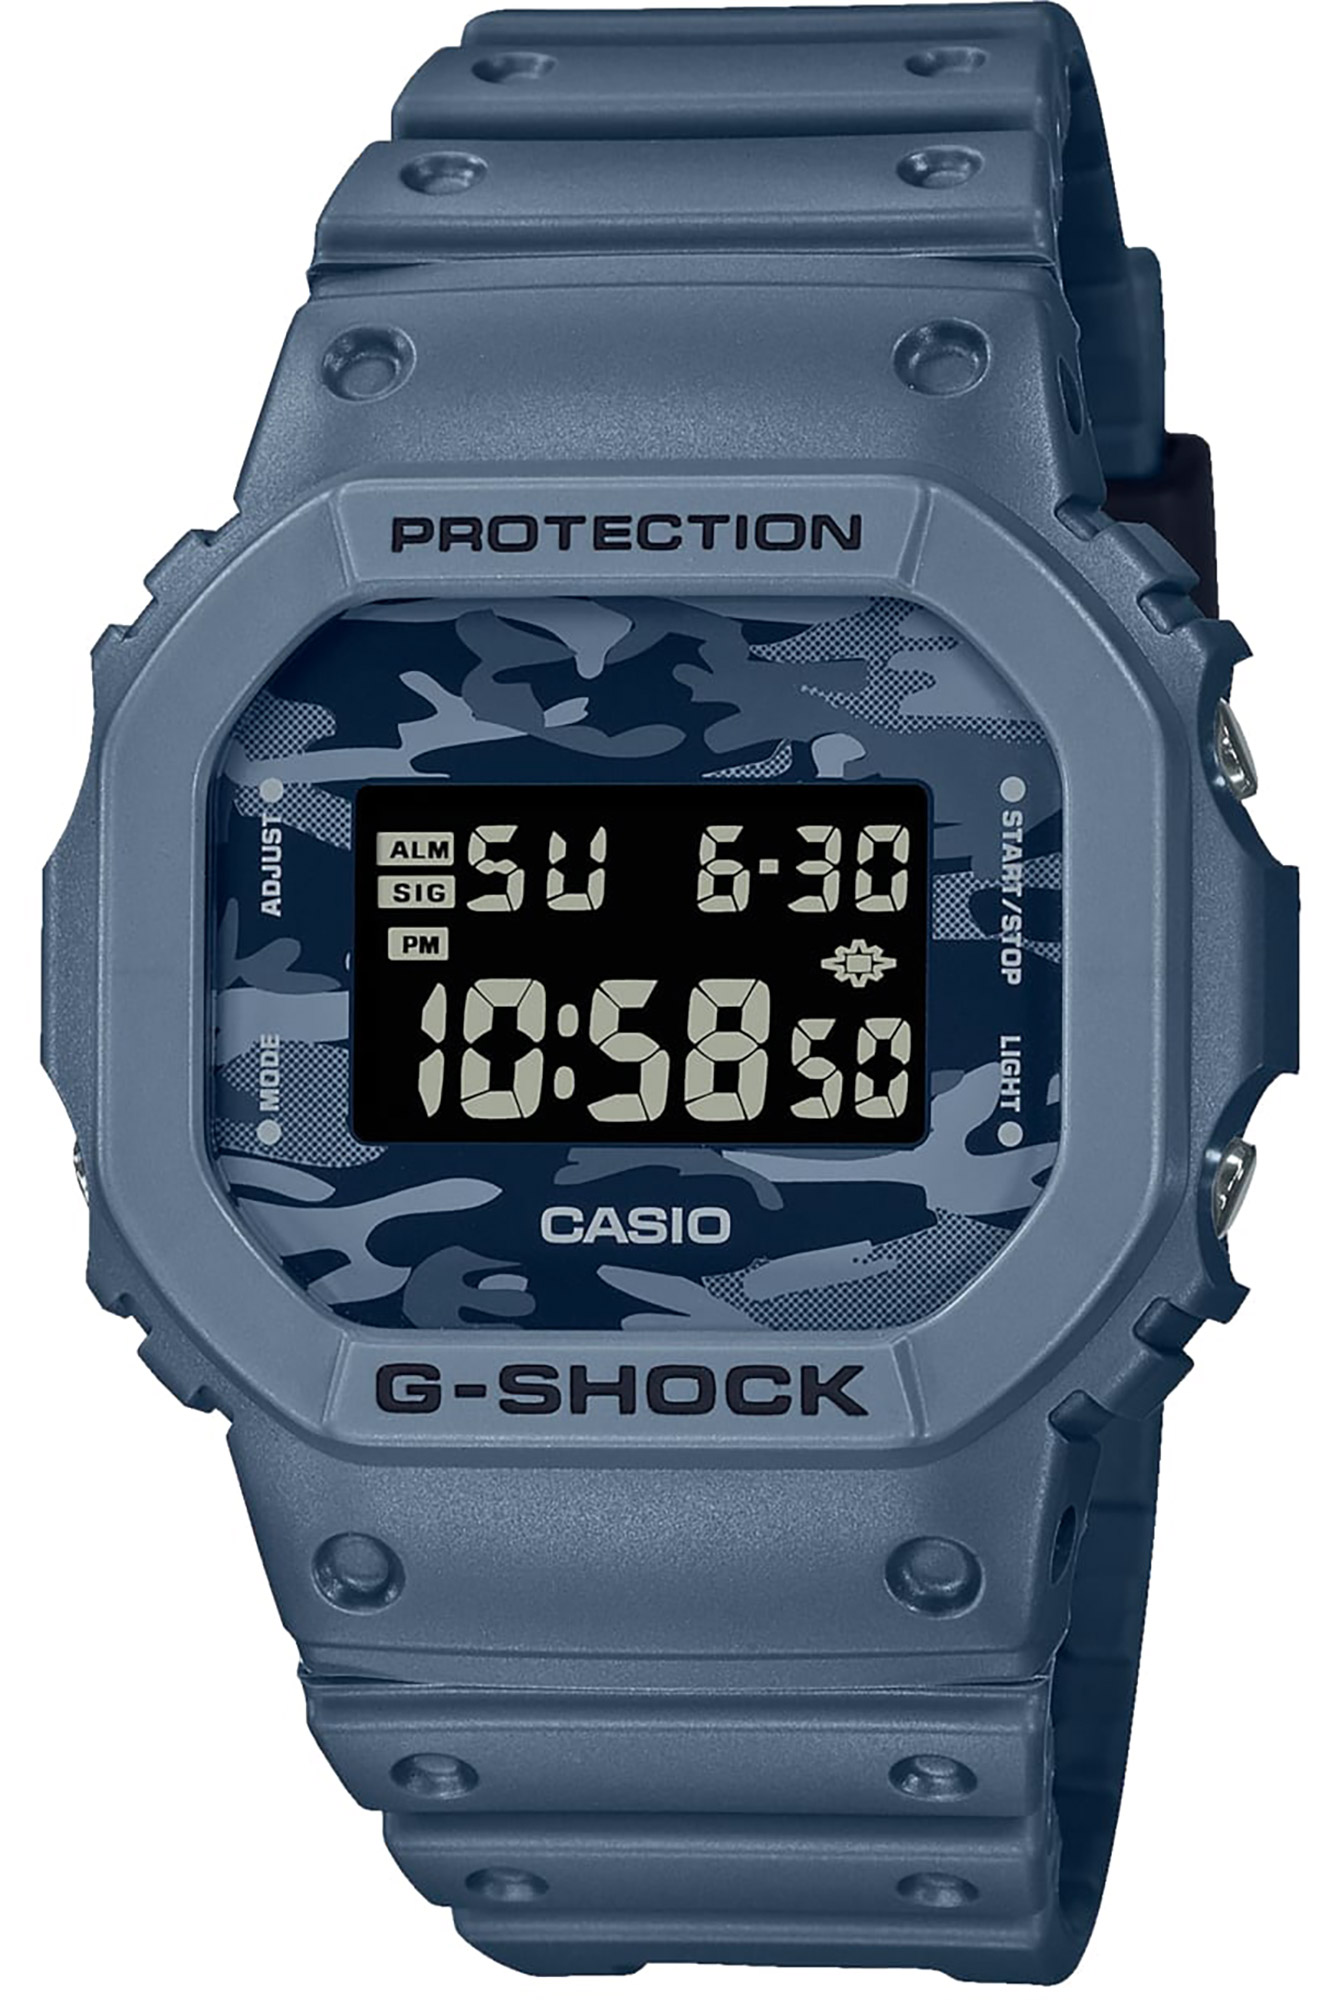 Watch CASIO G-Shock dw-5600ca-2er